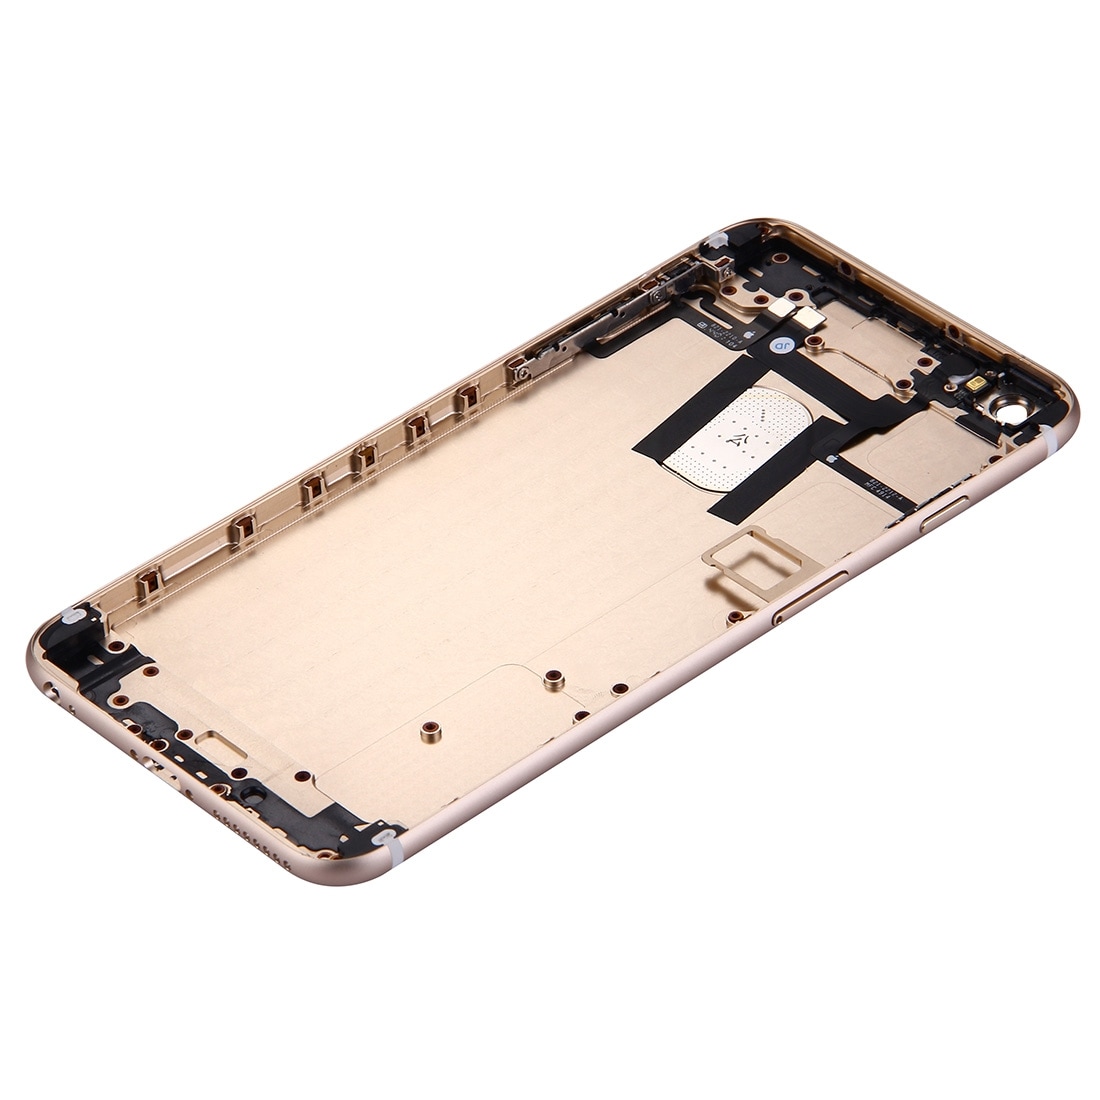 Komplett skalbyte iPhone 6 Plus - Guld